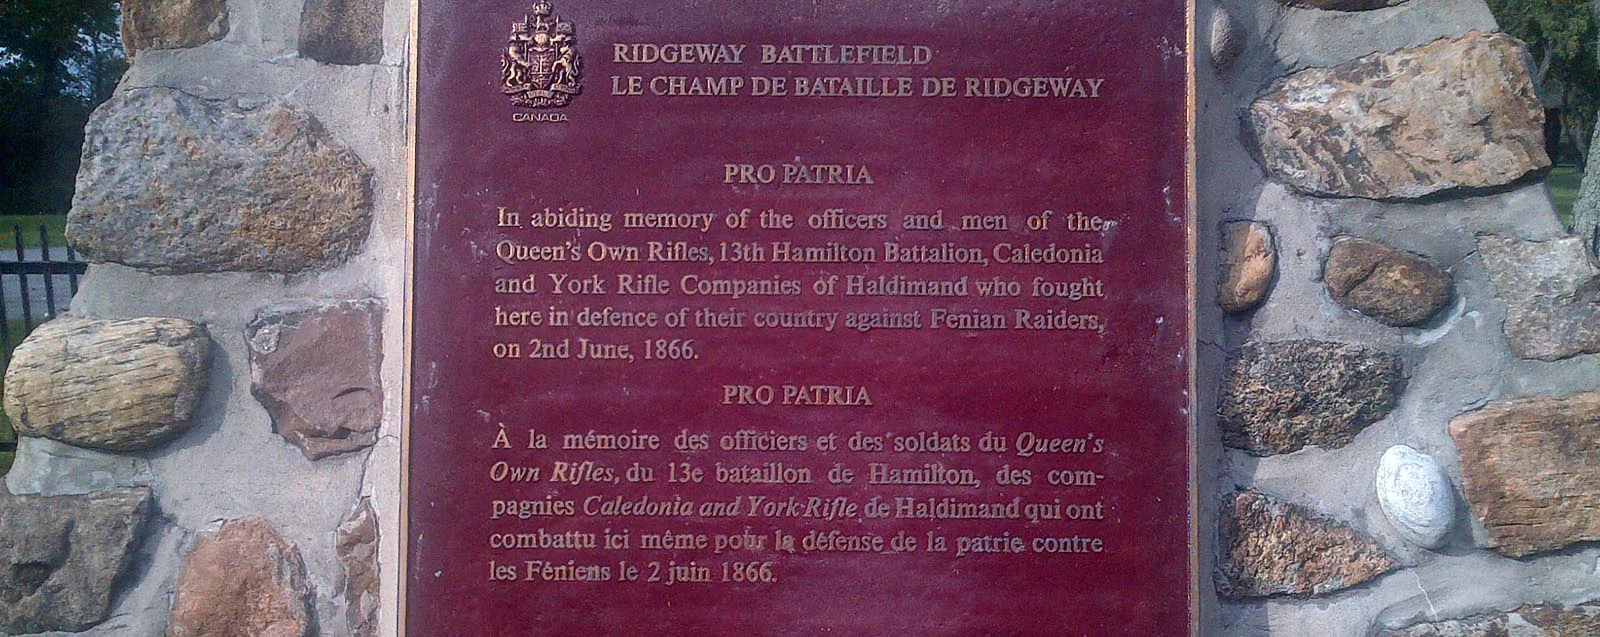 Ridgeway Battlefield Site